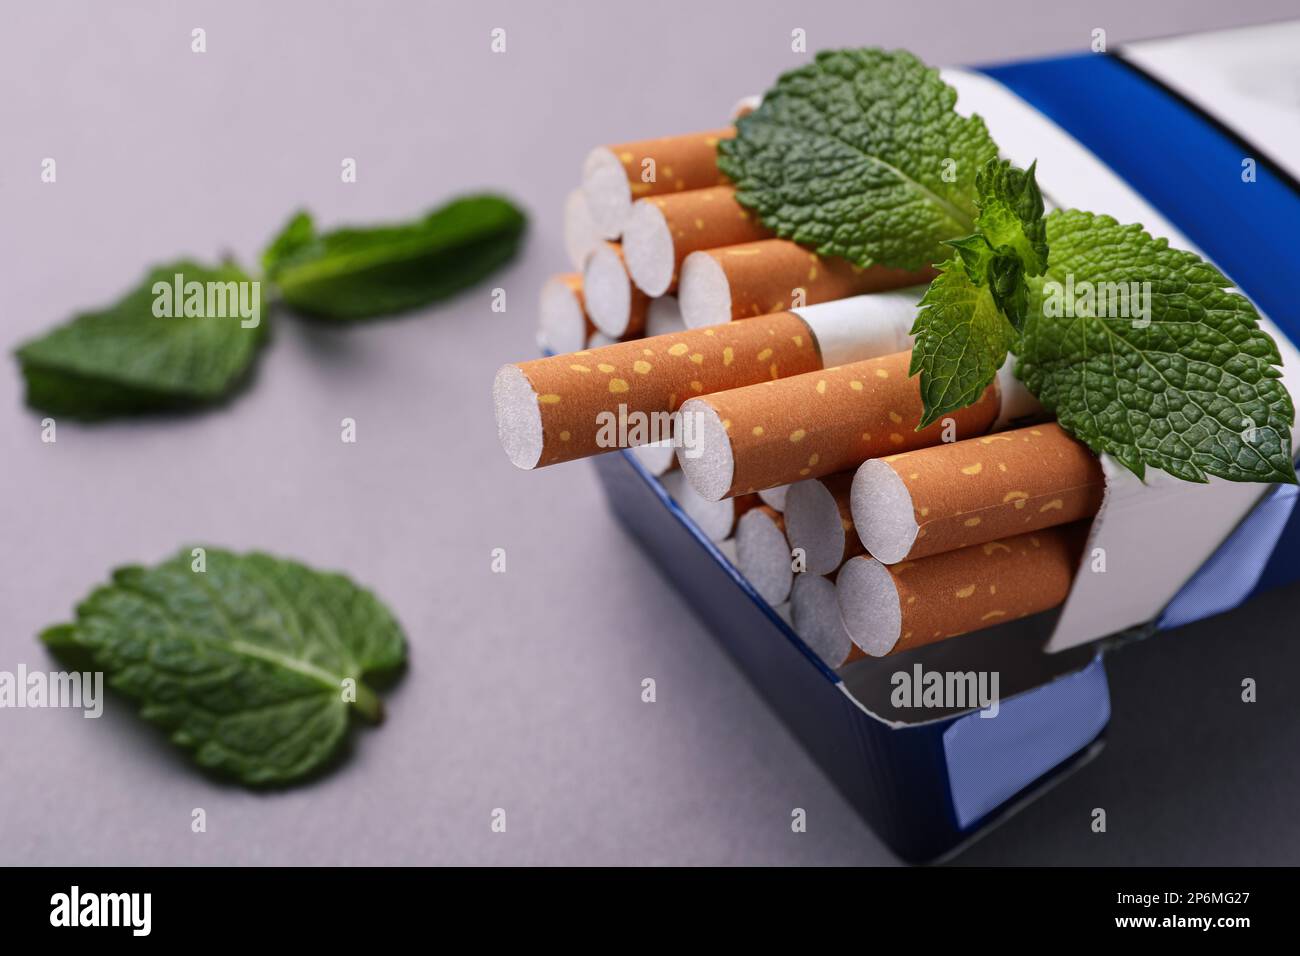 Paquet de cigarettes de menthol et de feuilles de menthe sur fond gris, gros plan Banque D'Images